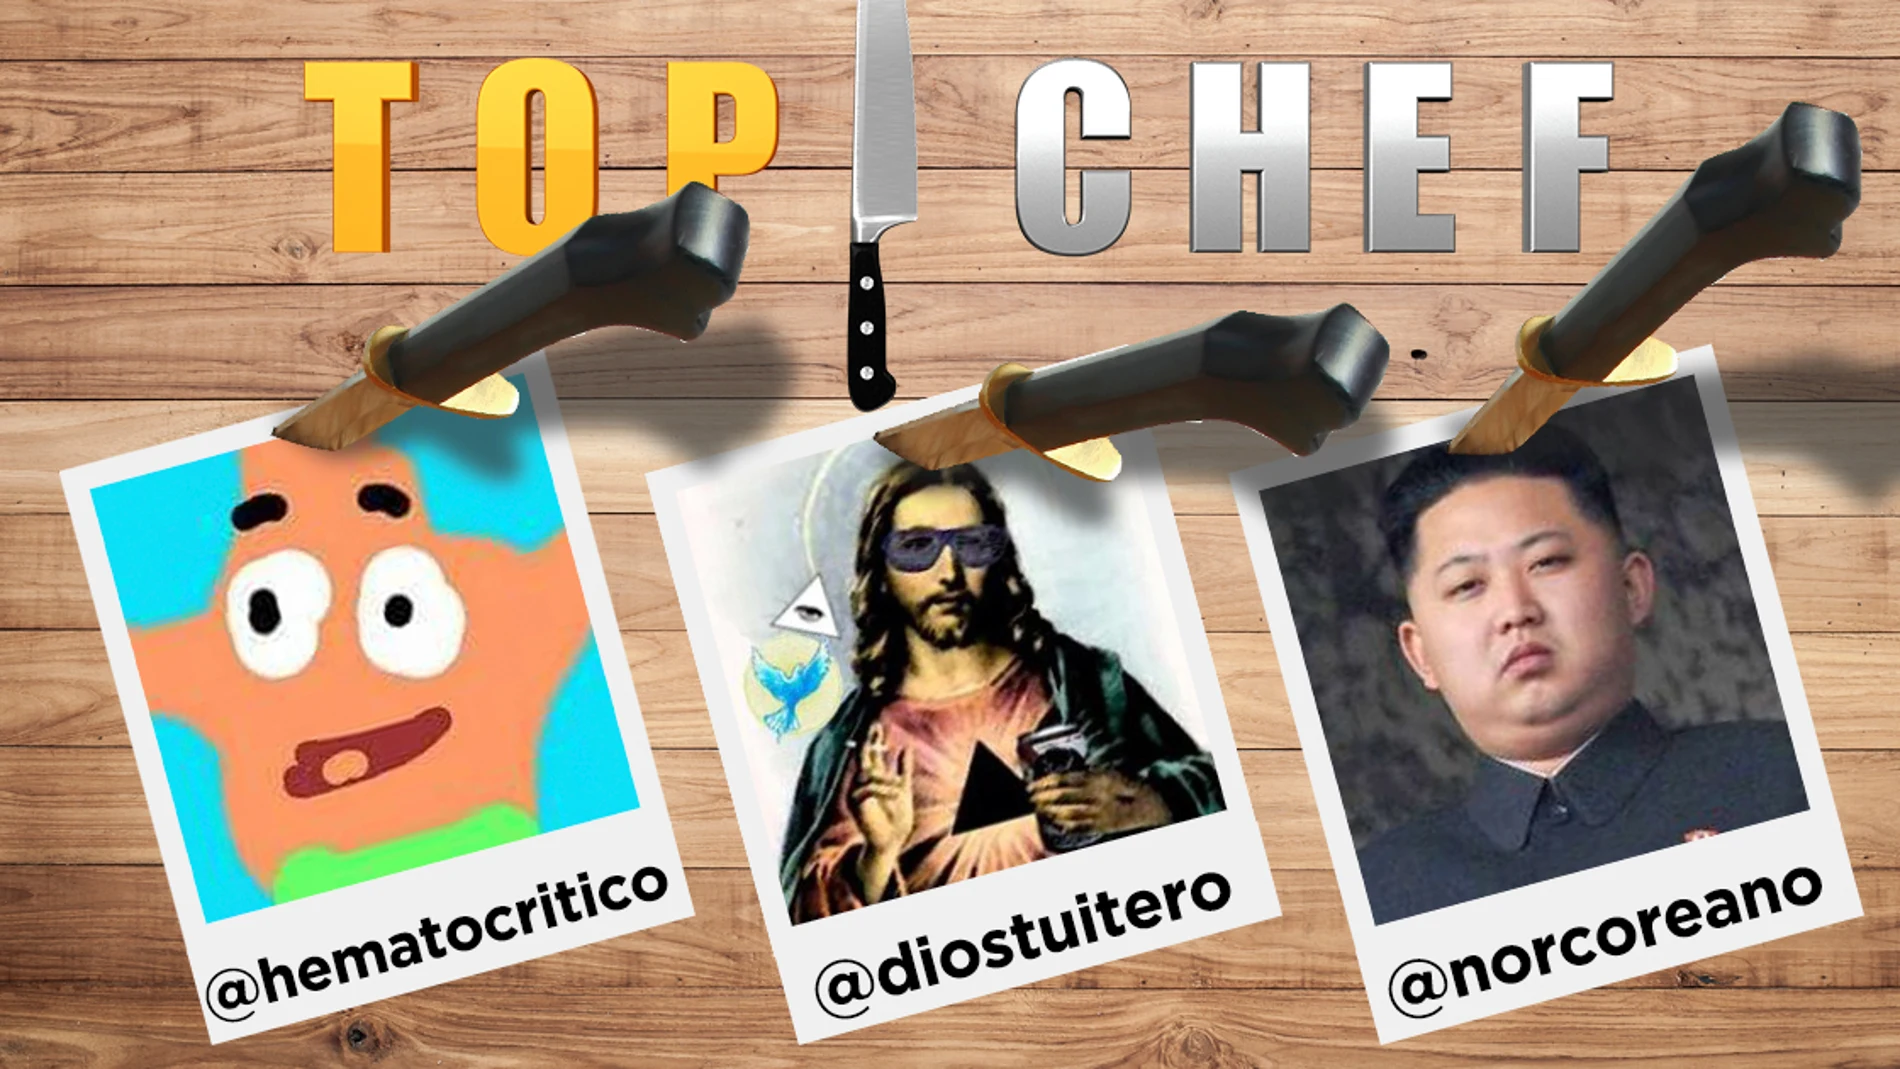 @norcoreano, @diostuitero y @hematocritico comentarán 'Top Chef' con sus divertidos posts